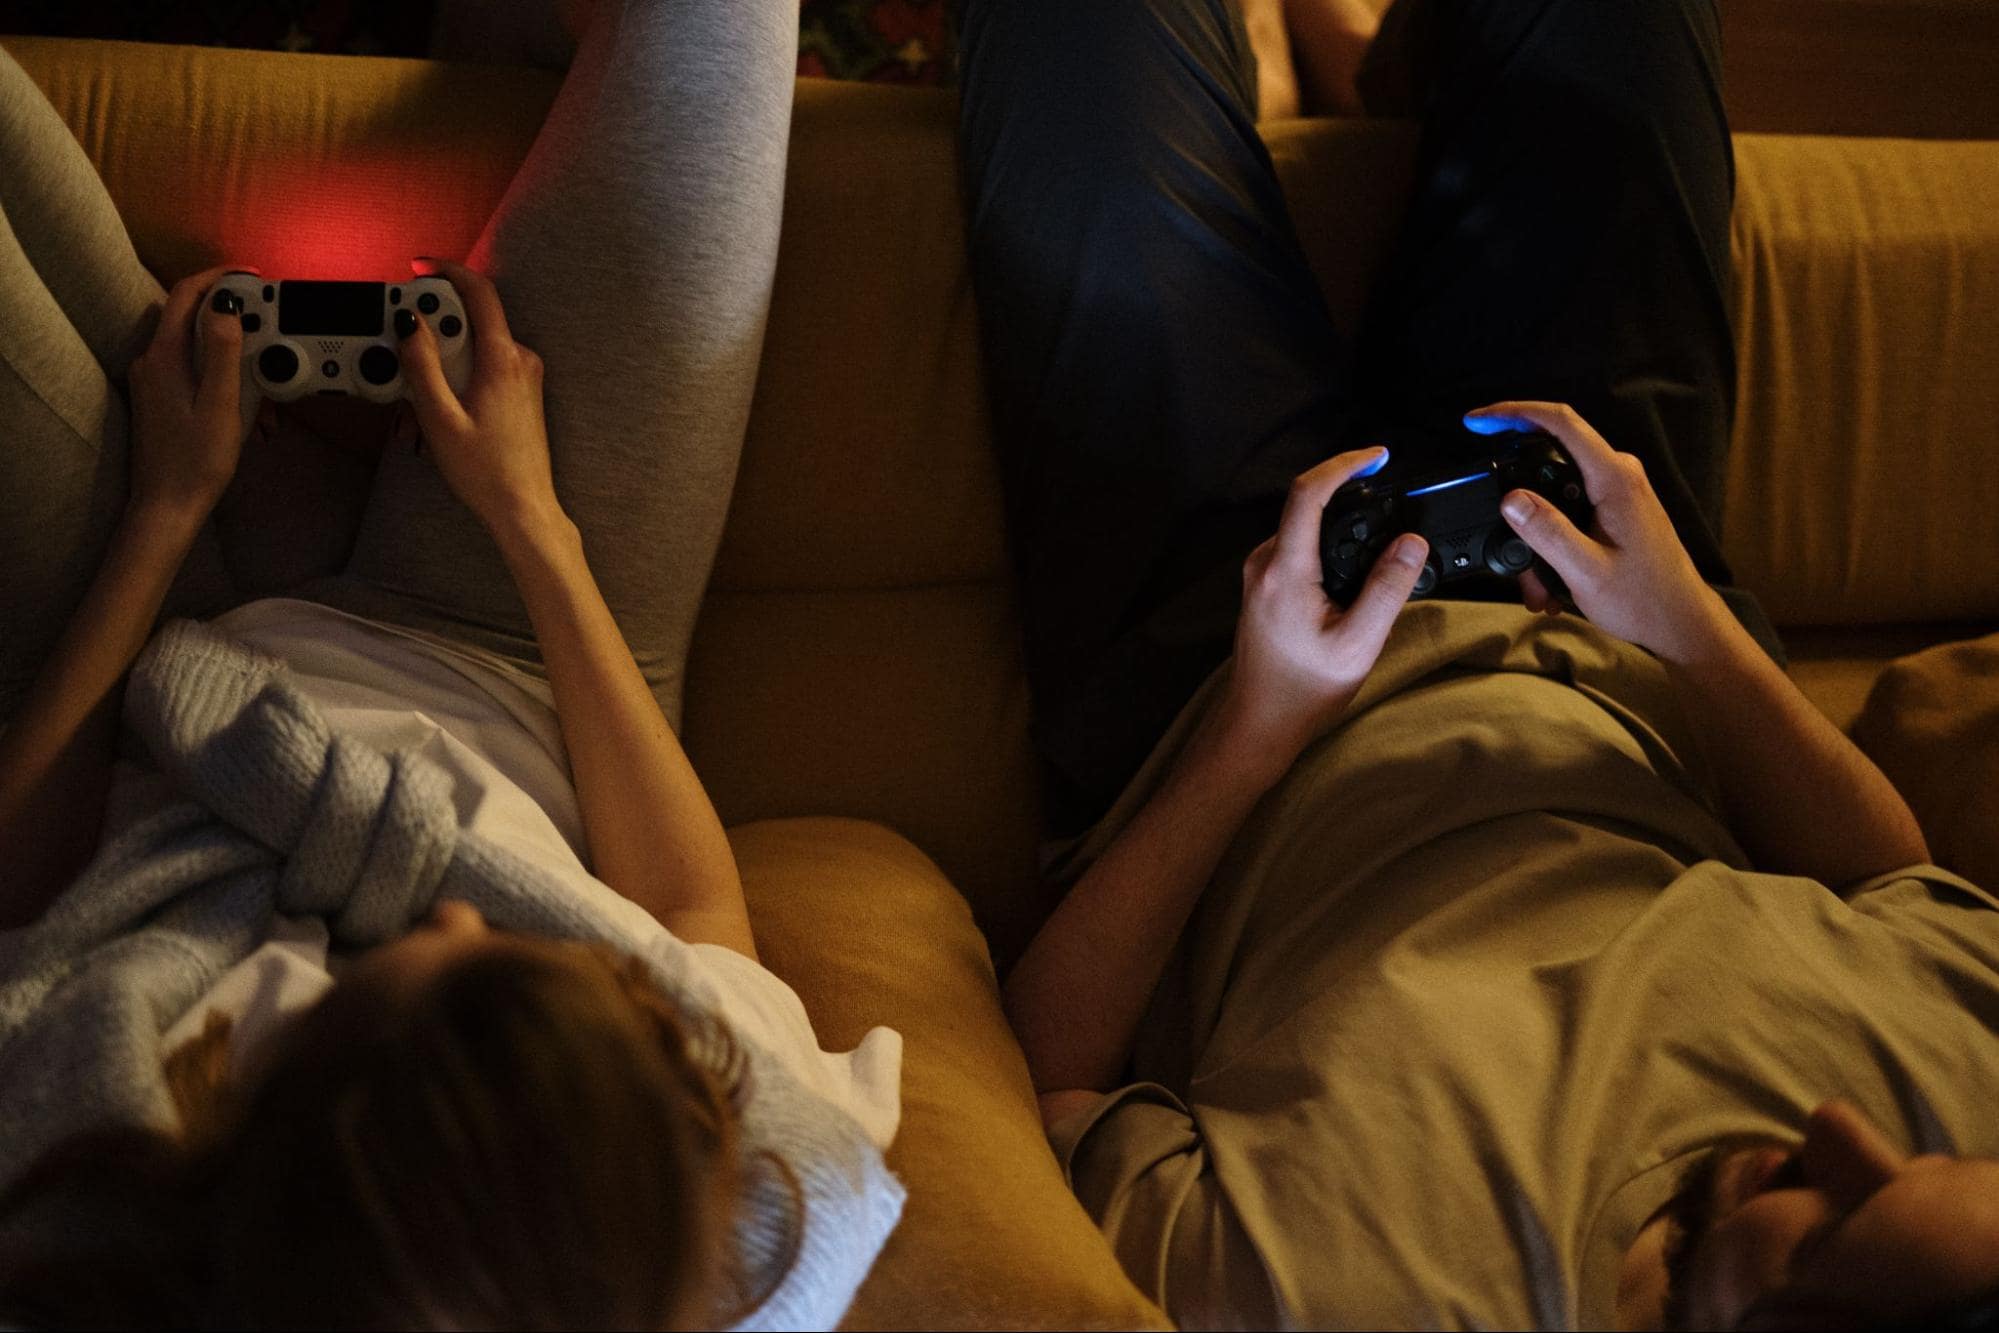 Два человека играют с контроллерами видеоигр